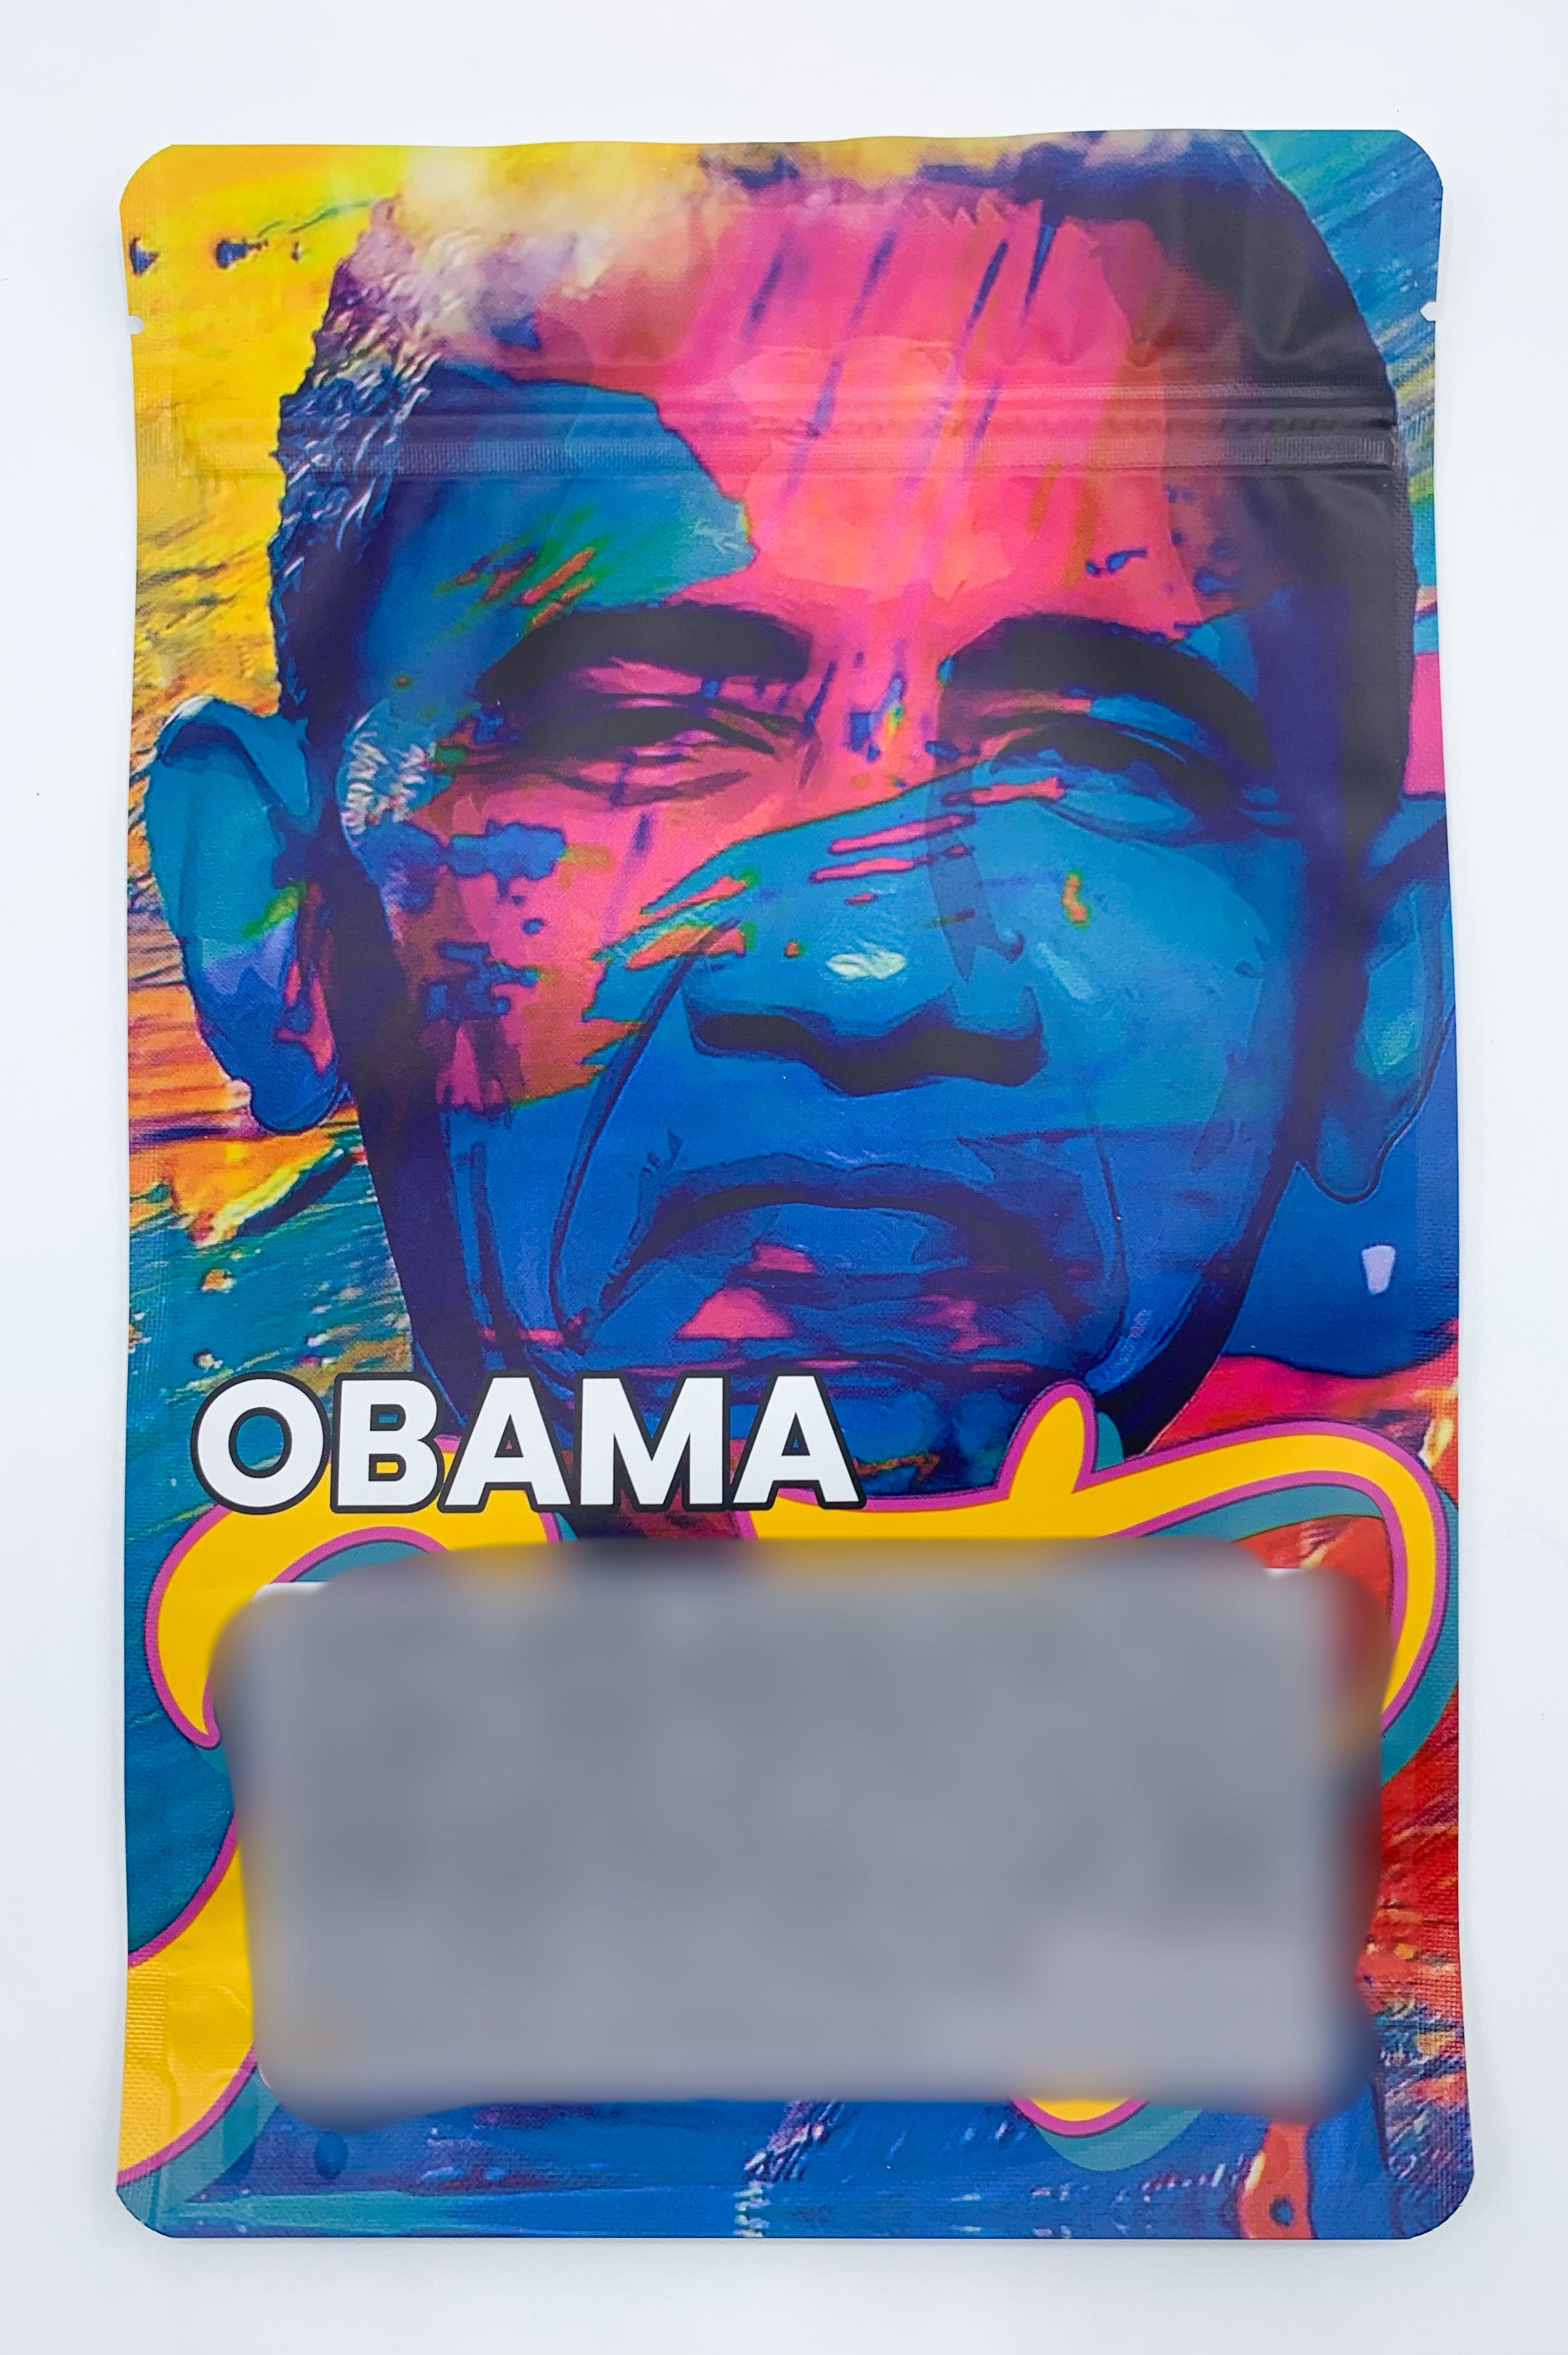 1 oz (28g) Runtz Obama Runtz Mylar Bags